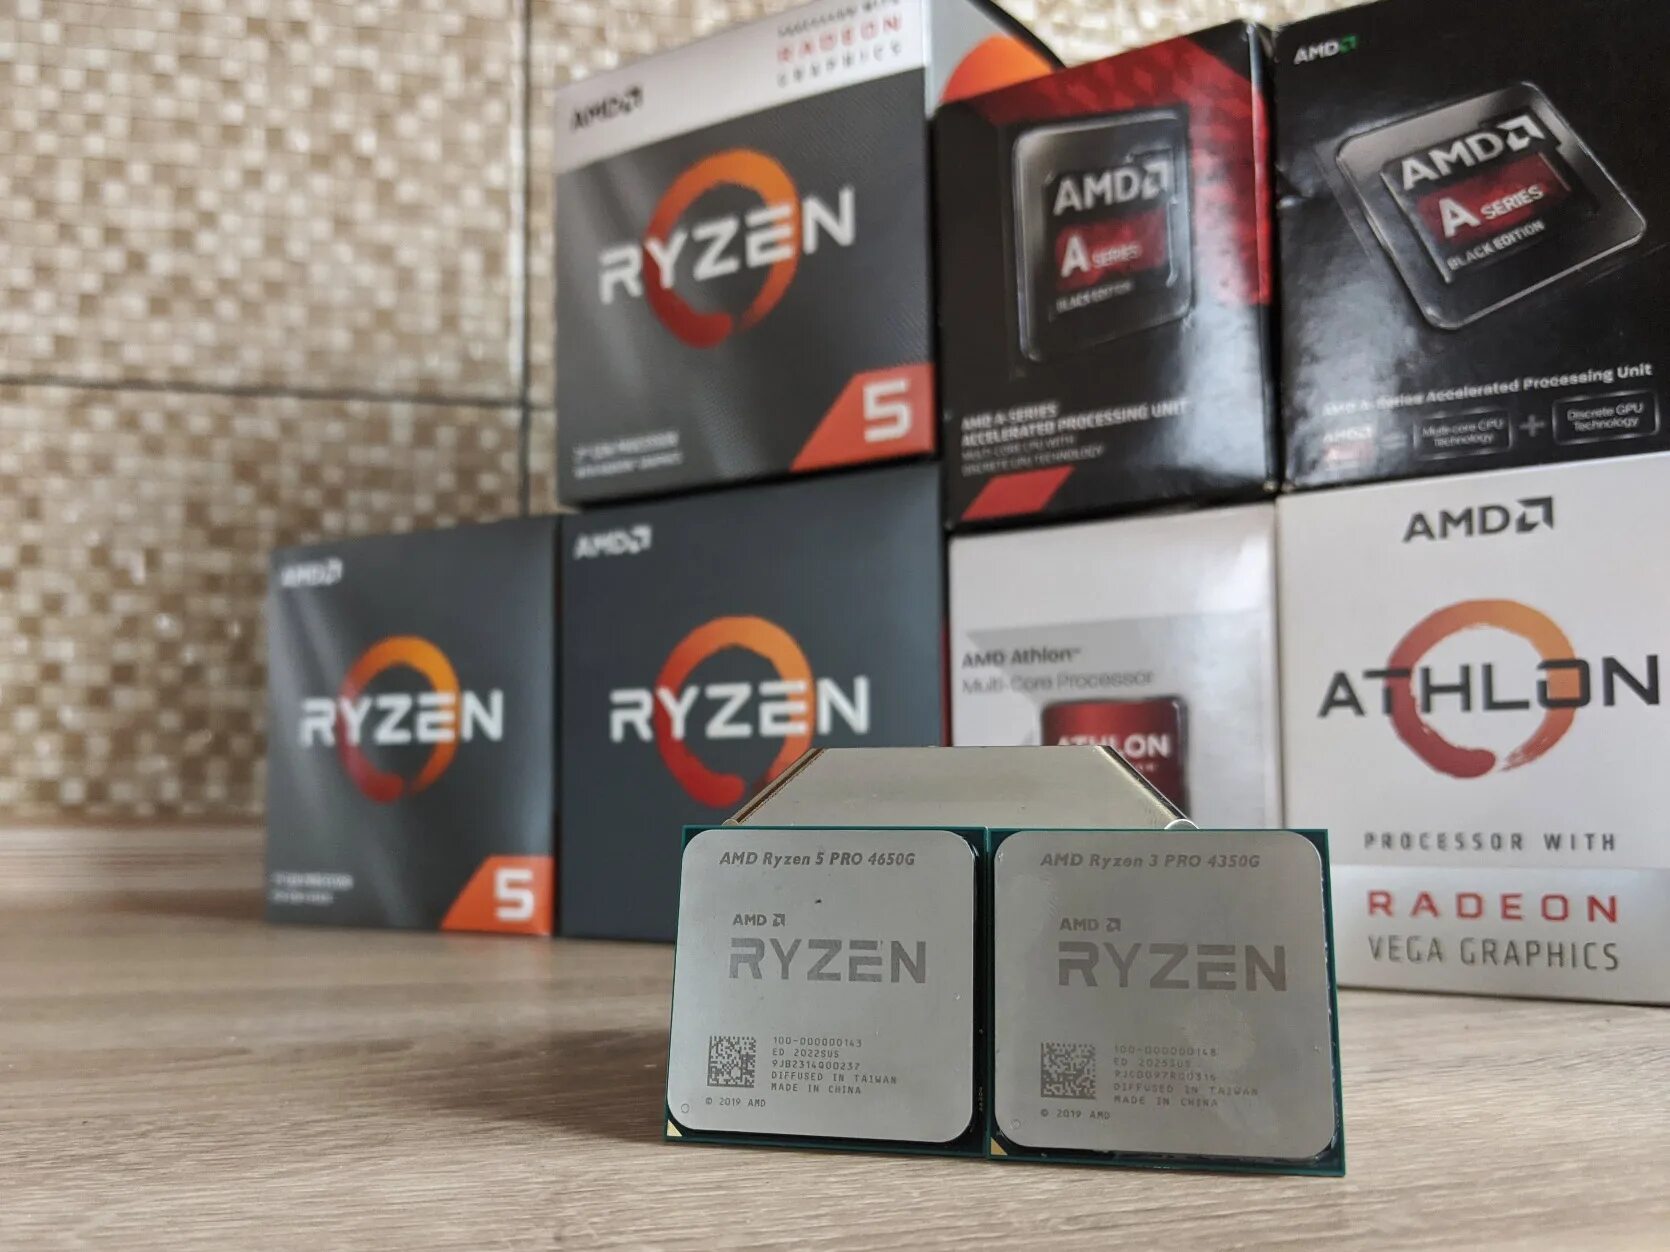 Amd radeon graphics ryzen 5. Процессор AMD Ryzen 3 Pro 4350g. Процессор AMD Ryzen 7 5700g. AMD Ryzen 5 Pro 4650g. Процессор AMD Ryzen 7 5700g упаковка.